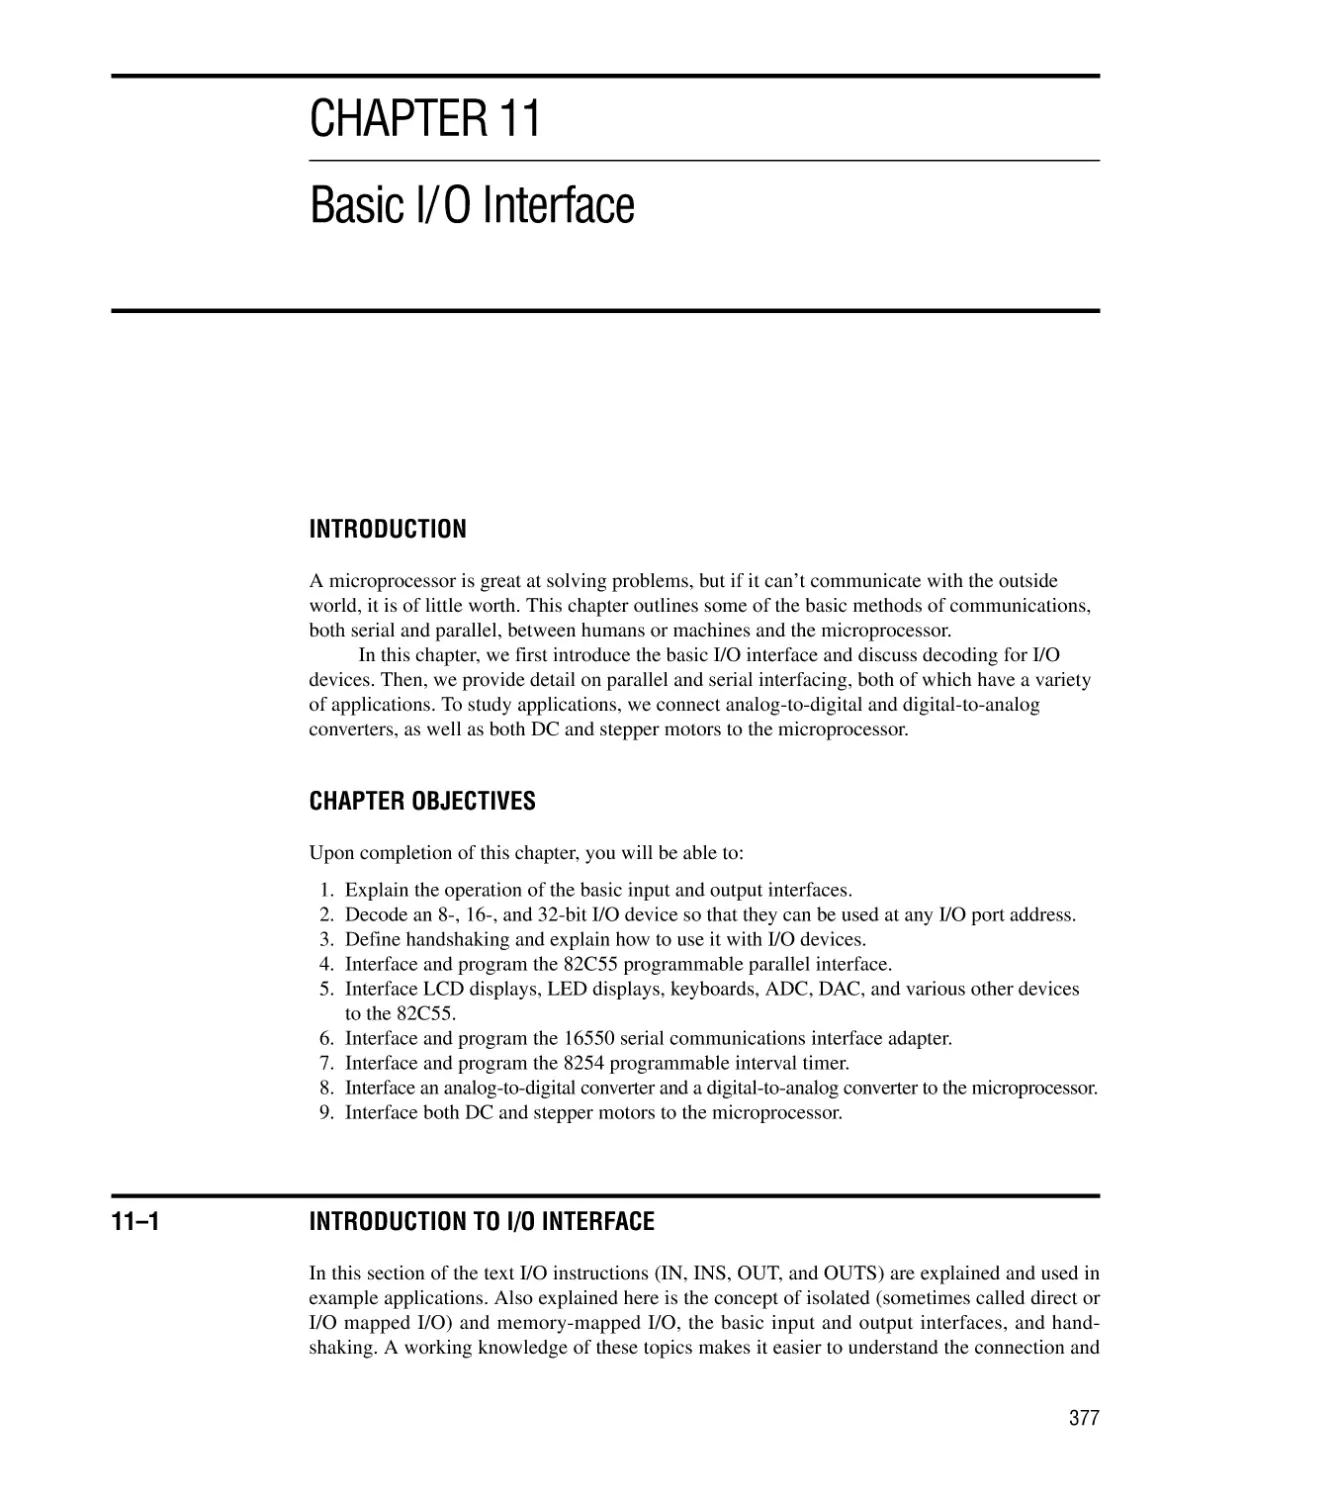 CHAPTER 11 BASIC I/O INTERFACE
Introduction/Chapter Objectives
11–1 Introduction to I/O Interface